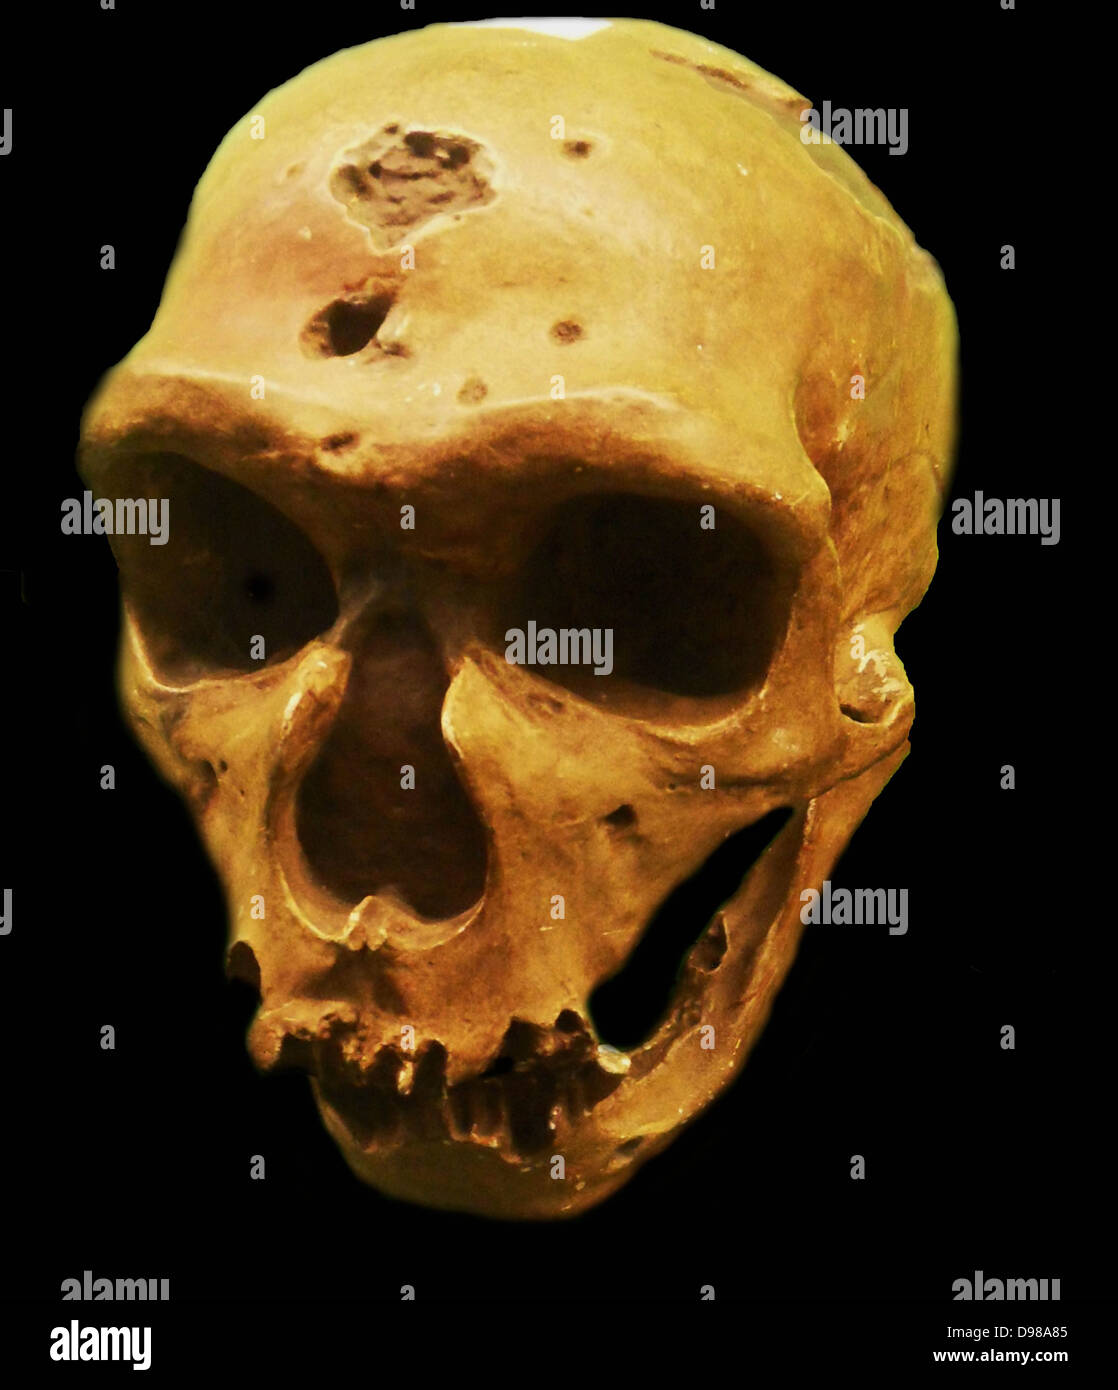 Der Neandertaler eine ausgestorbene Mitglied der Gattung Homo, die sich aus dem Pleistozän Exemplare in Europa gefunden und Teile der westlichen und zentralen Asien bekannt ist. Neandertaler sind entweder als Unterart (oder Rasse) von Menschen (Homo sapiens neanderthalensis) oder als separate Arten (Homo Neanderthalensis). Stockfoto